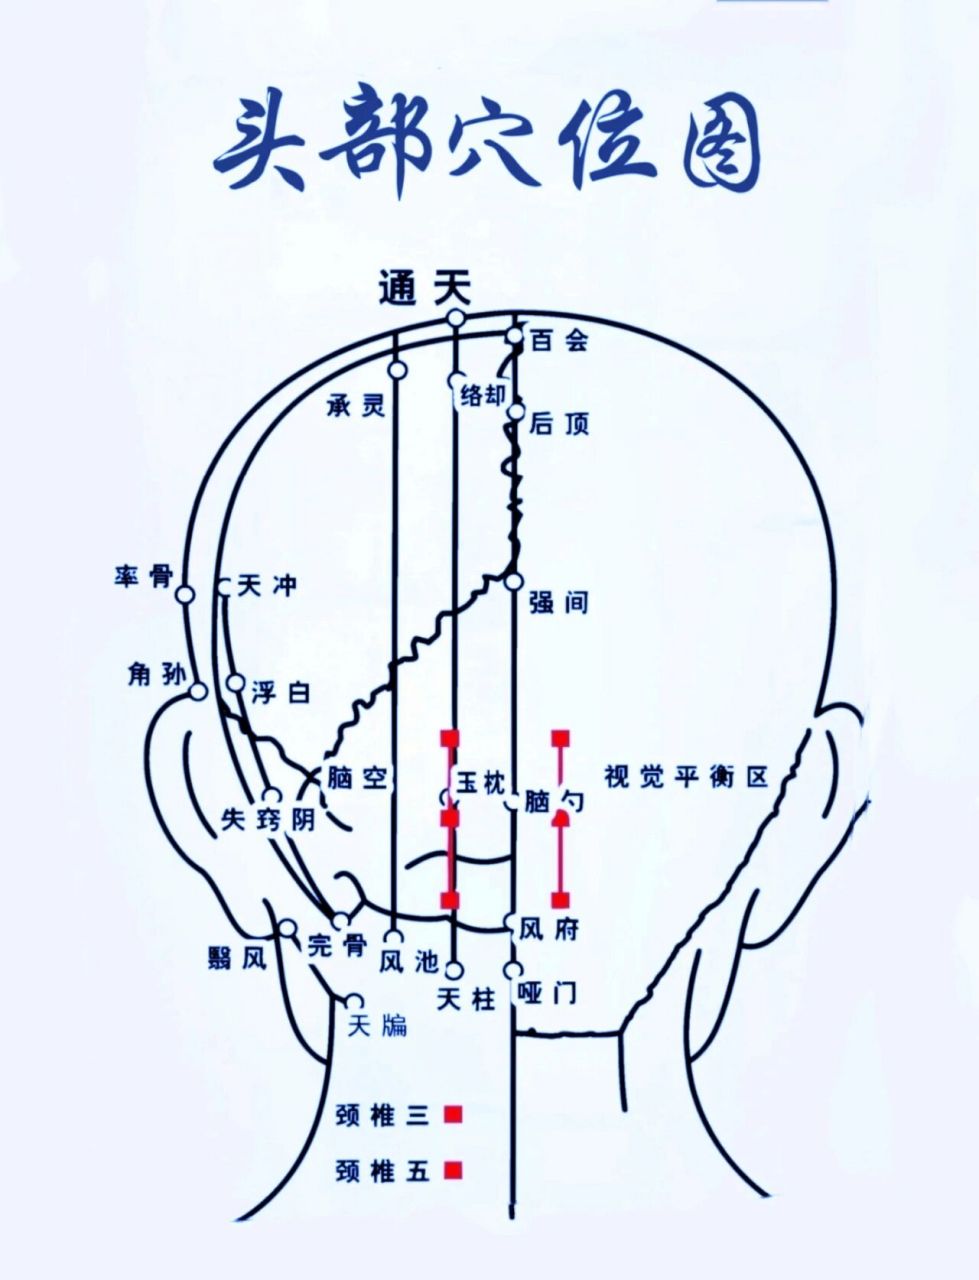 人体头部按摩位置图图片